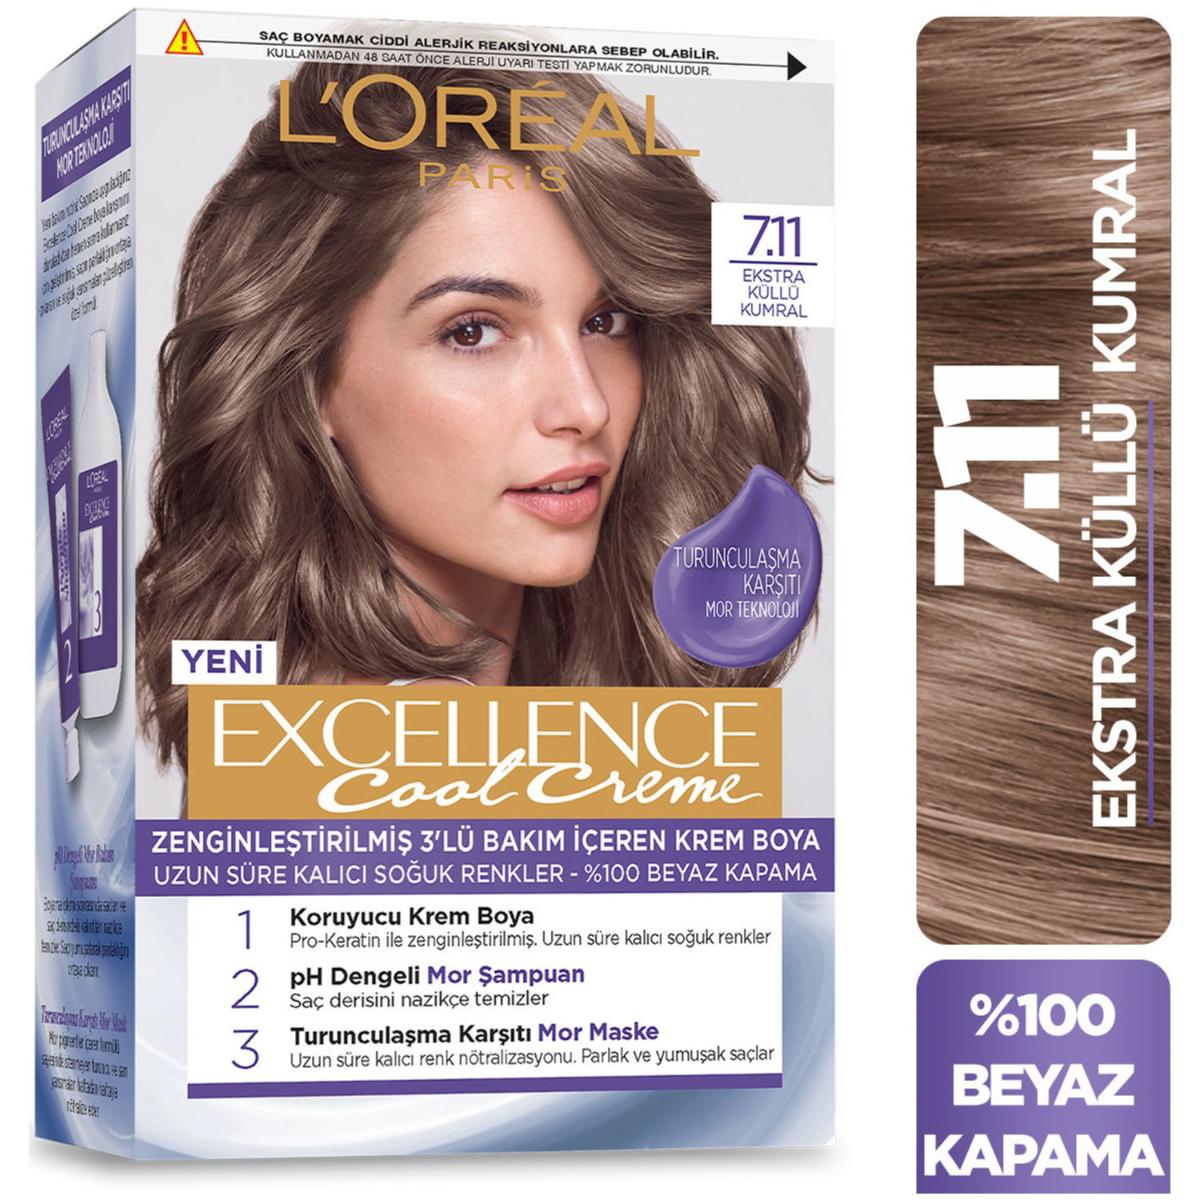 L'Oréal Paris 7.11 Ekstra Küllü Kumral Krem Saç Boyası 48 ml